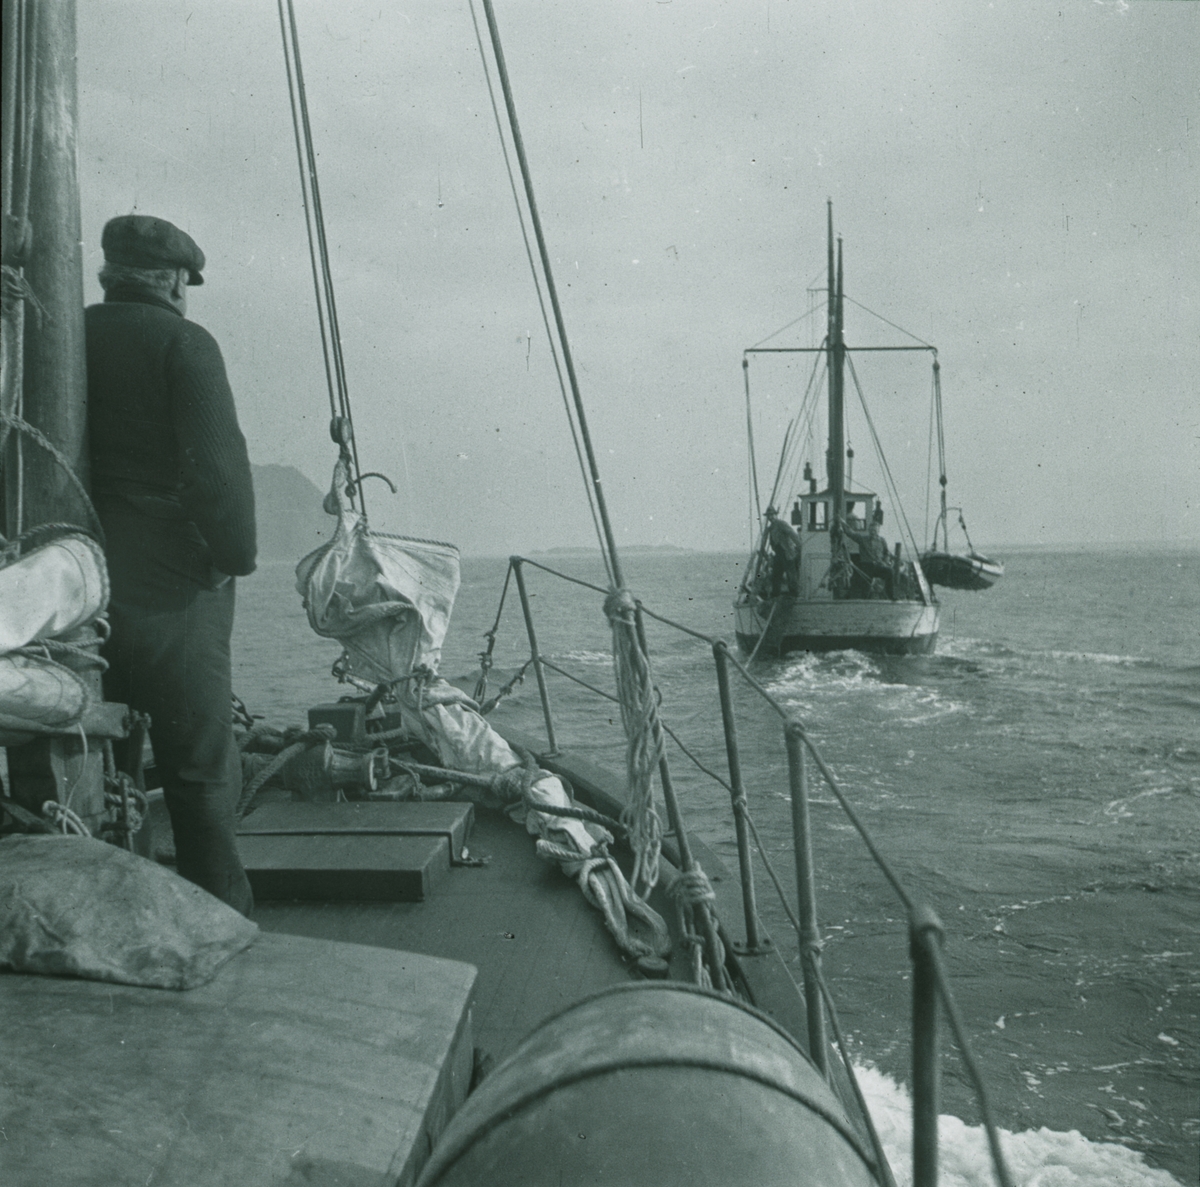 Fotografi från expedition till Spetsbergen. Motiv av två båtar på havet.